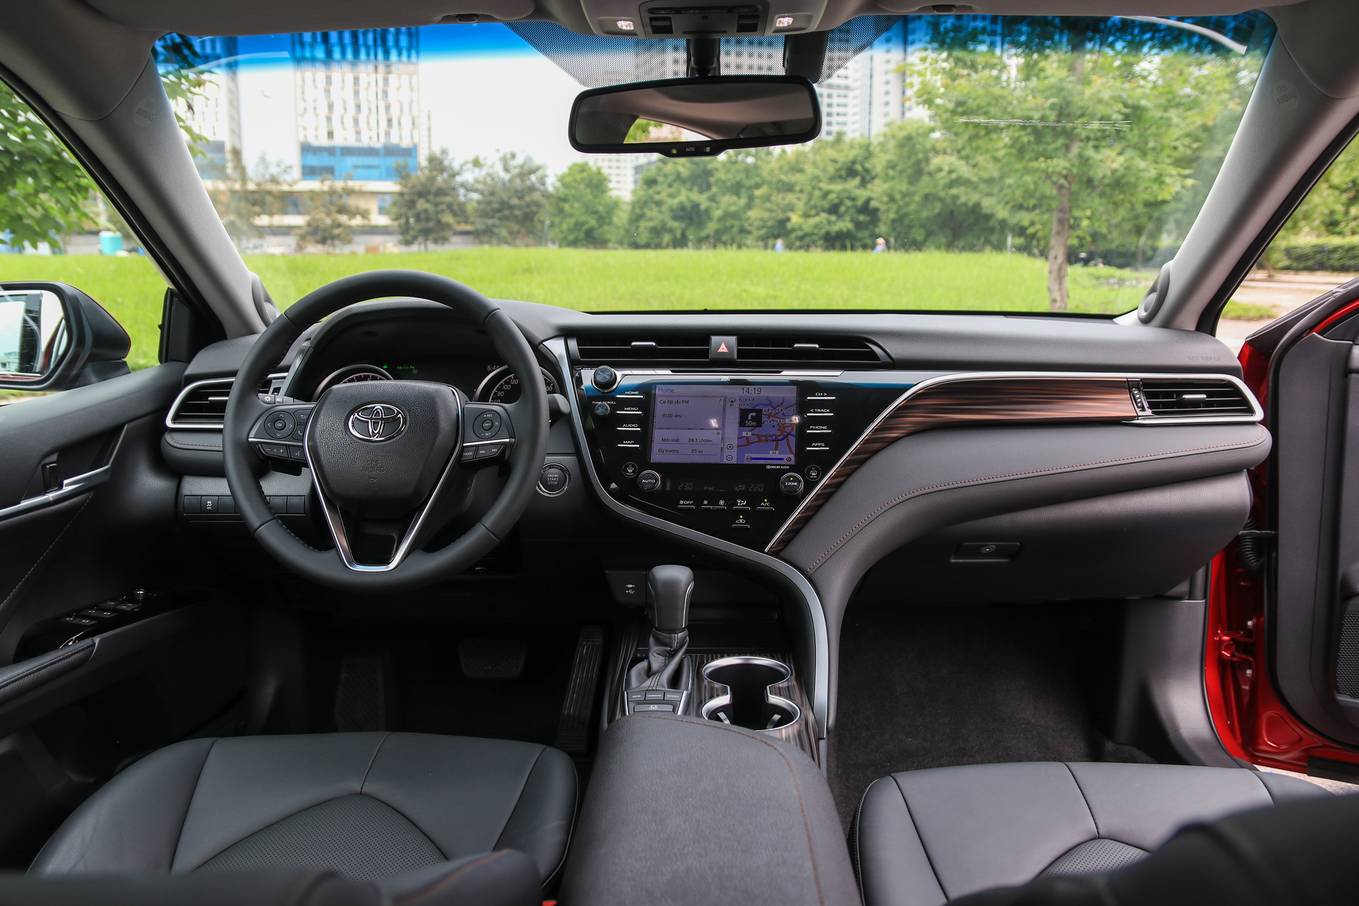 Toyota Camry 2019 trình làng, giá bán chính thức 1,235 tỷ đồng